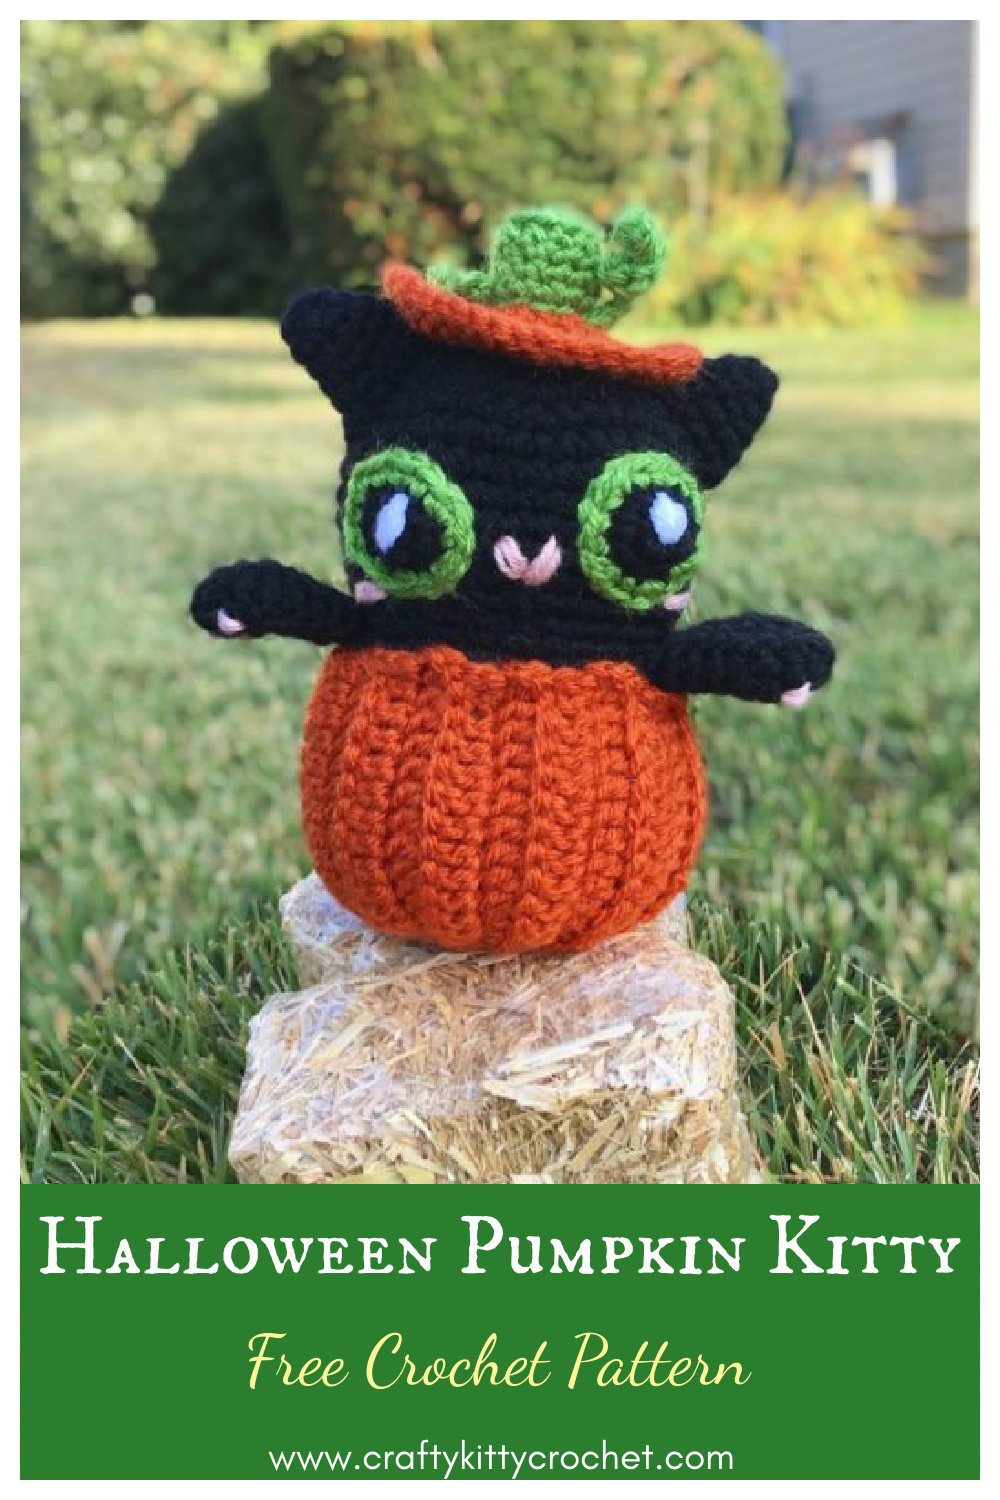 Halloween Pumpkin Kitty Free Crochet Pattern